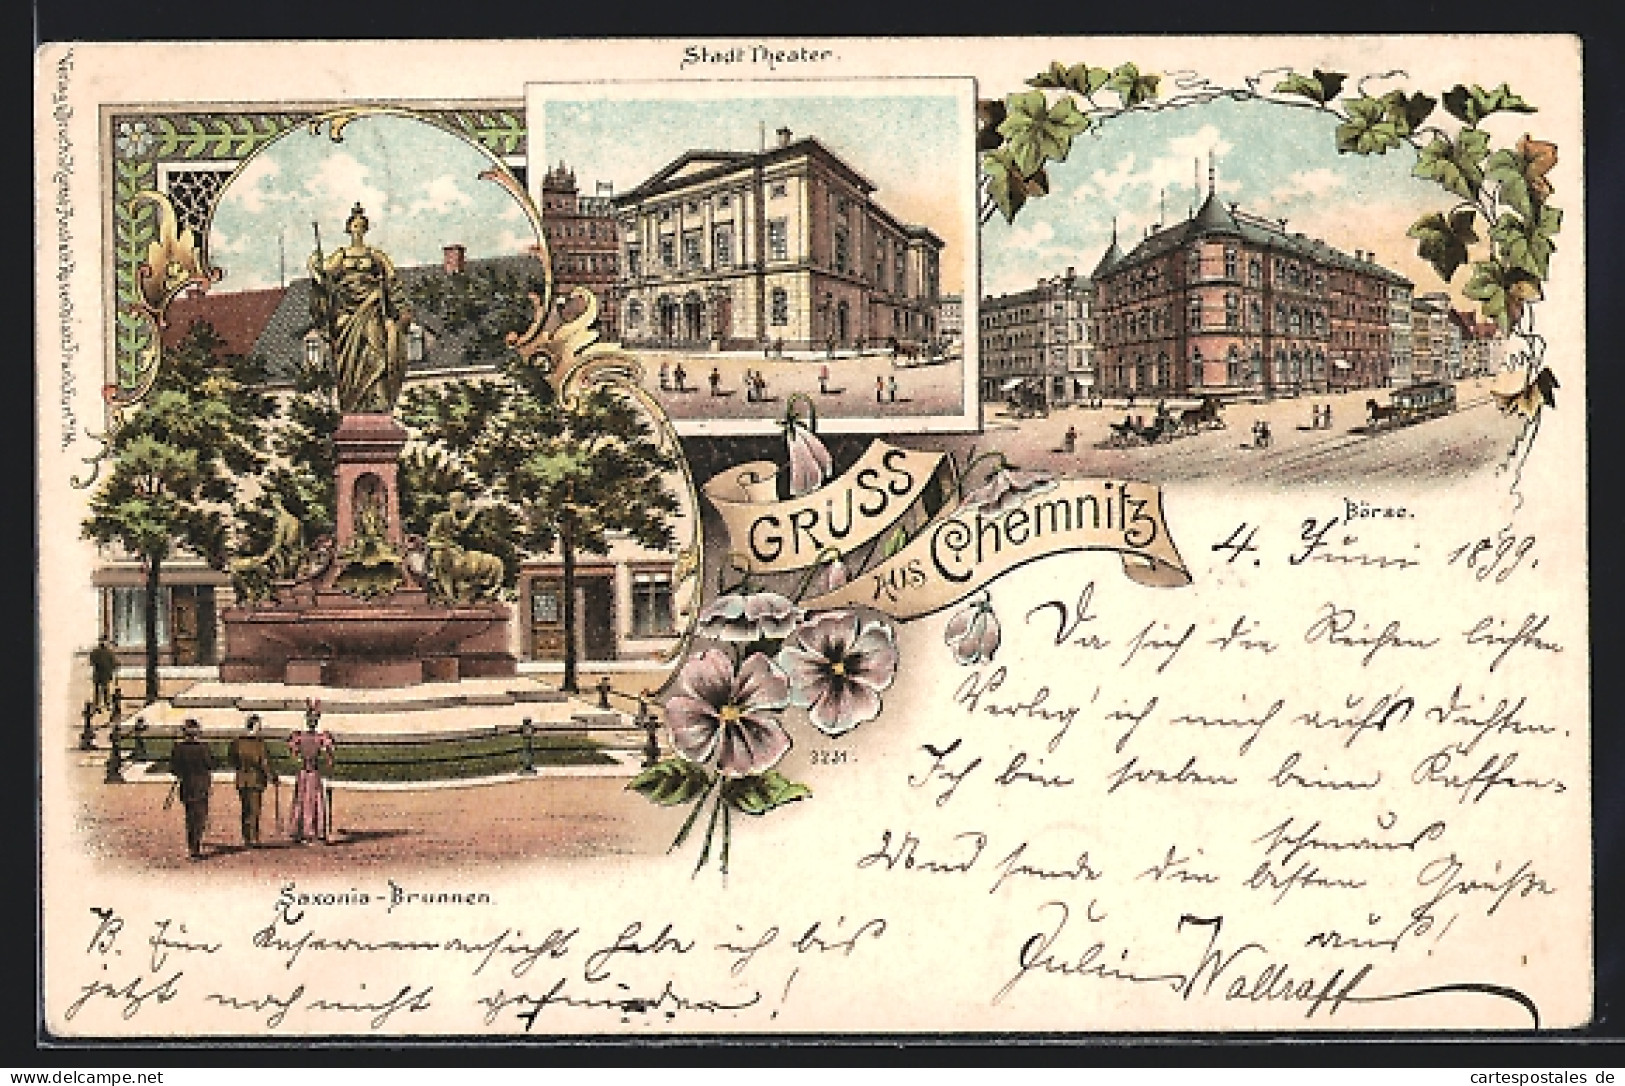 Lithographie Chemnitz, Saxonia-Brunnen, Stadt-Theater, Börse  - Theater